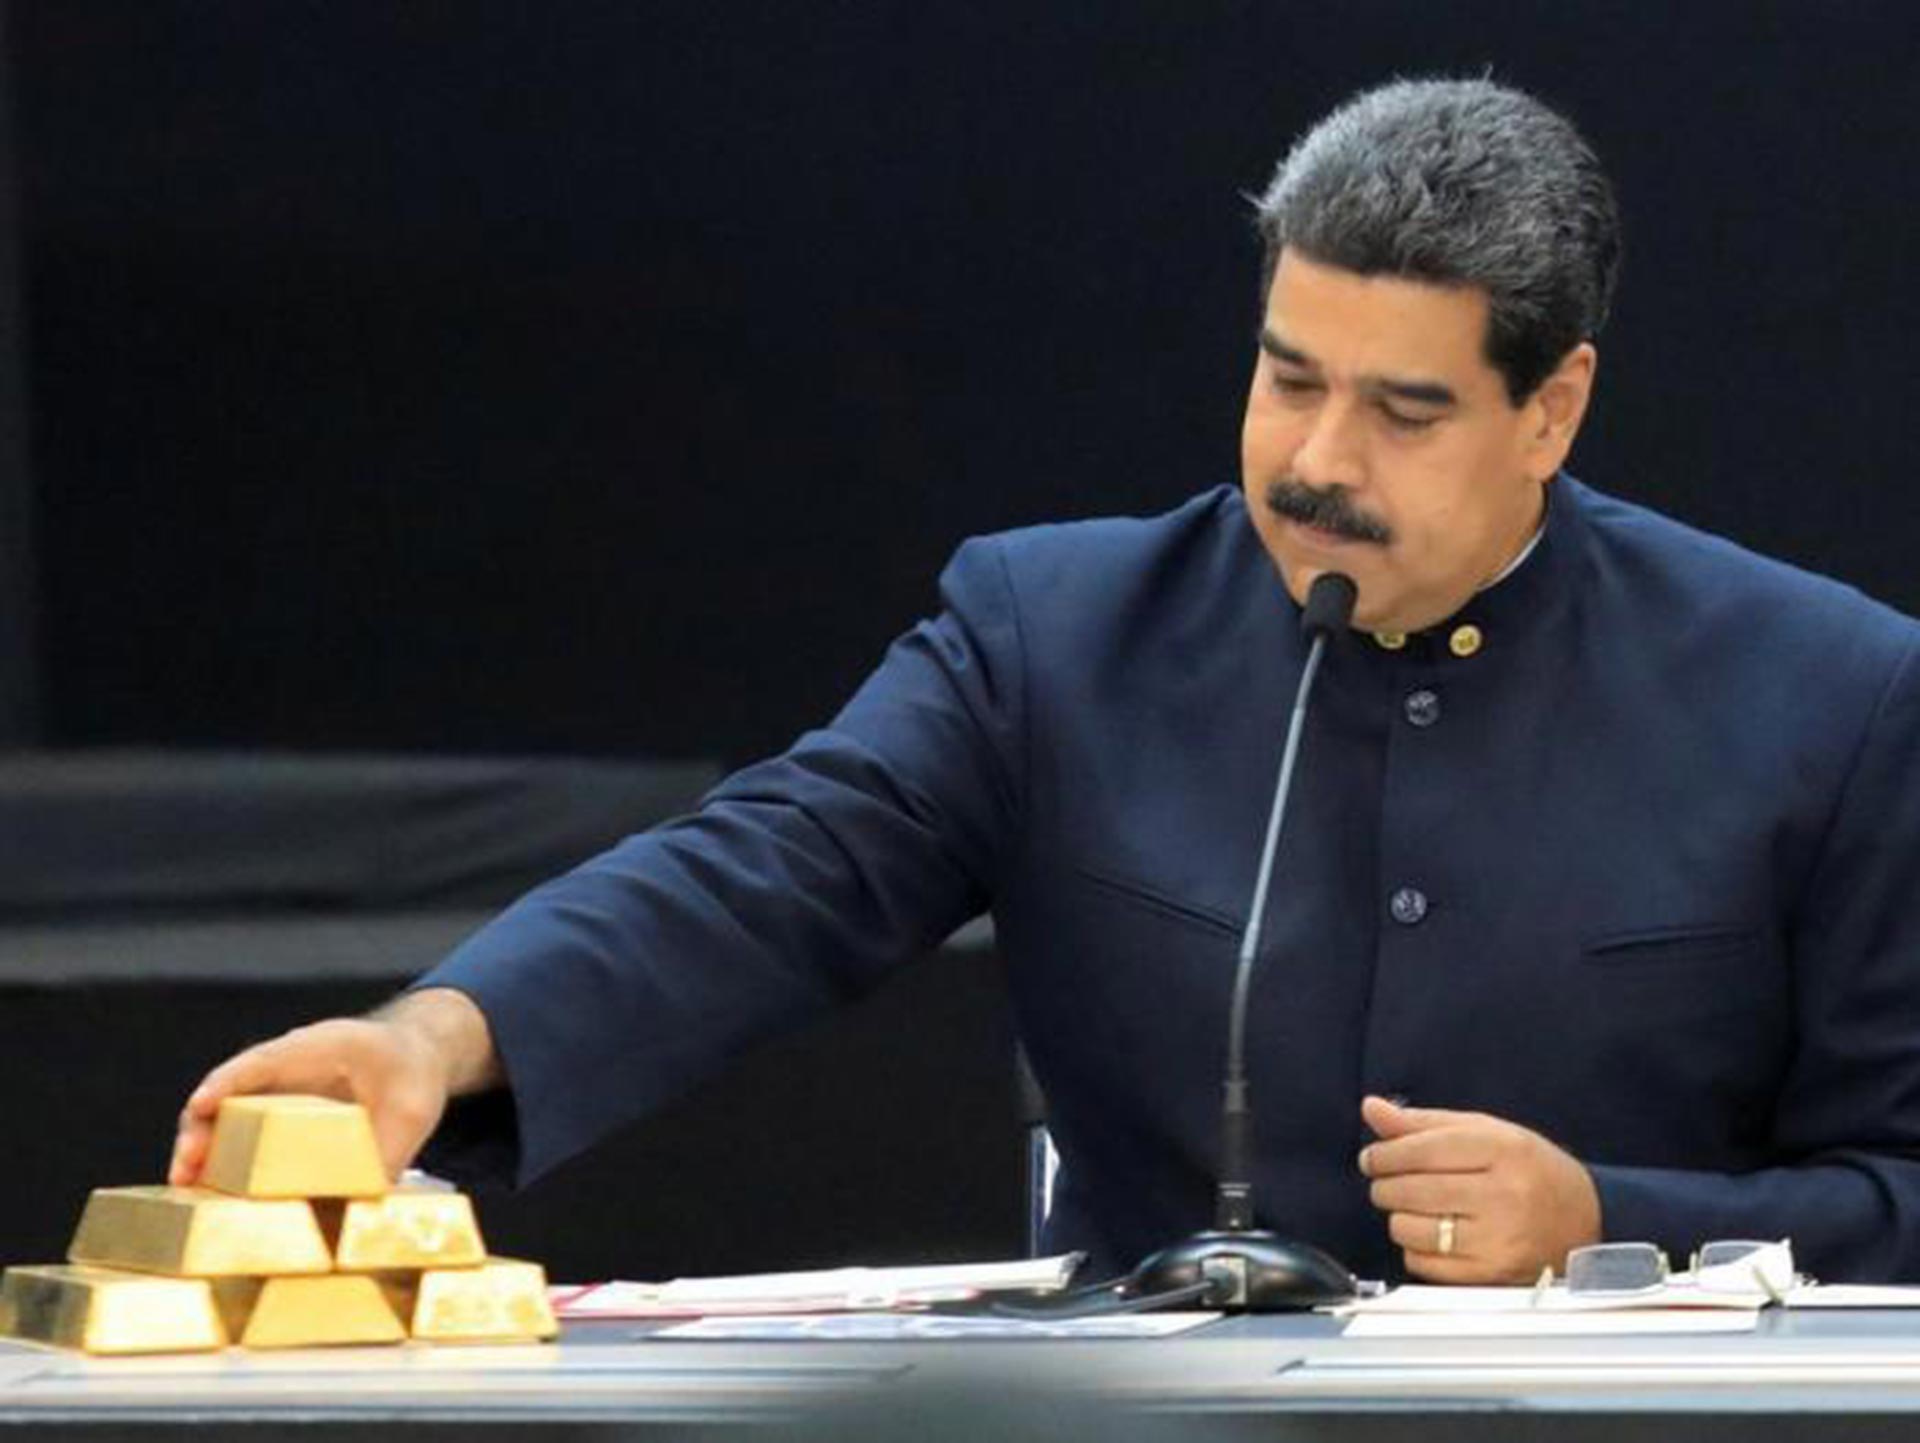 El oro venezolano está siendo enviado a Cabo Verde para abrir la ruta de liberación de Alex Saab